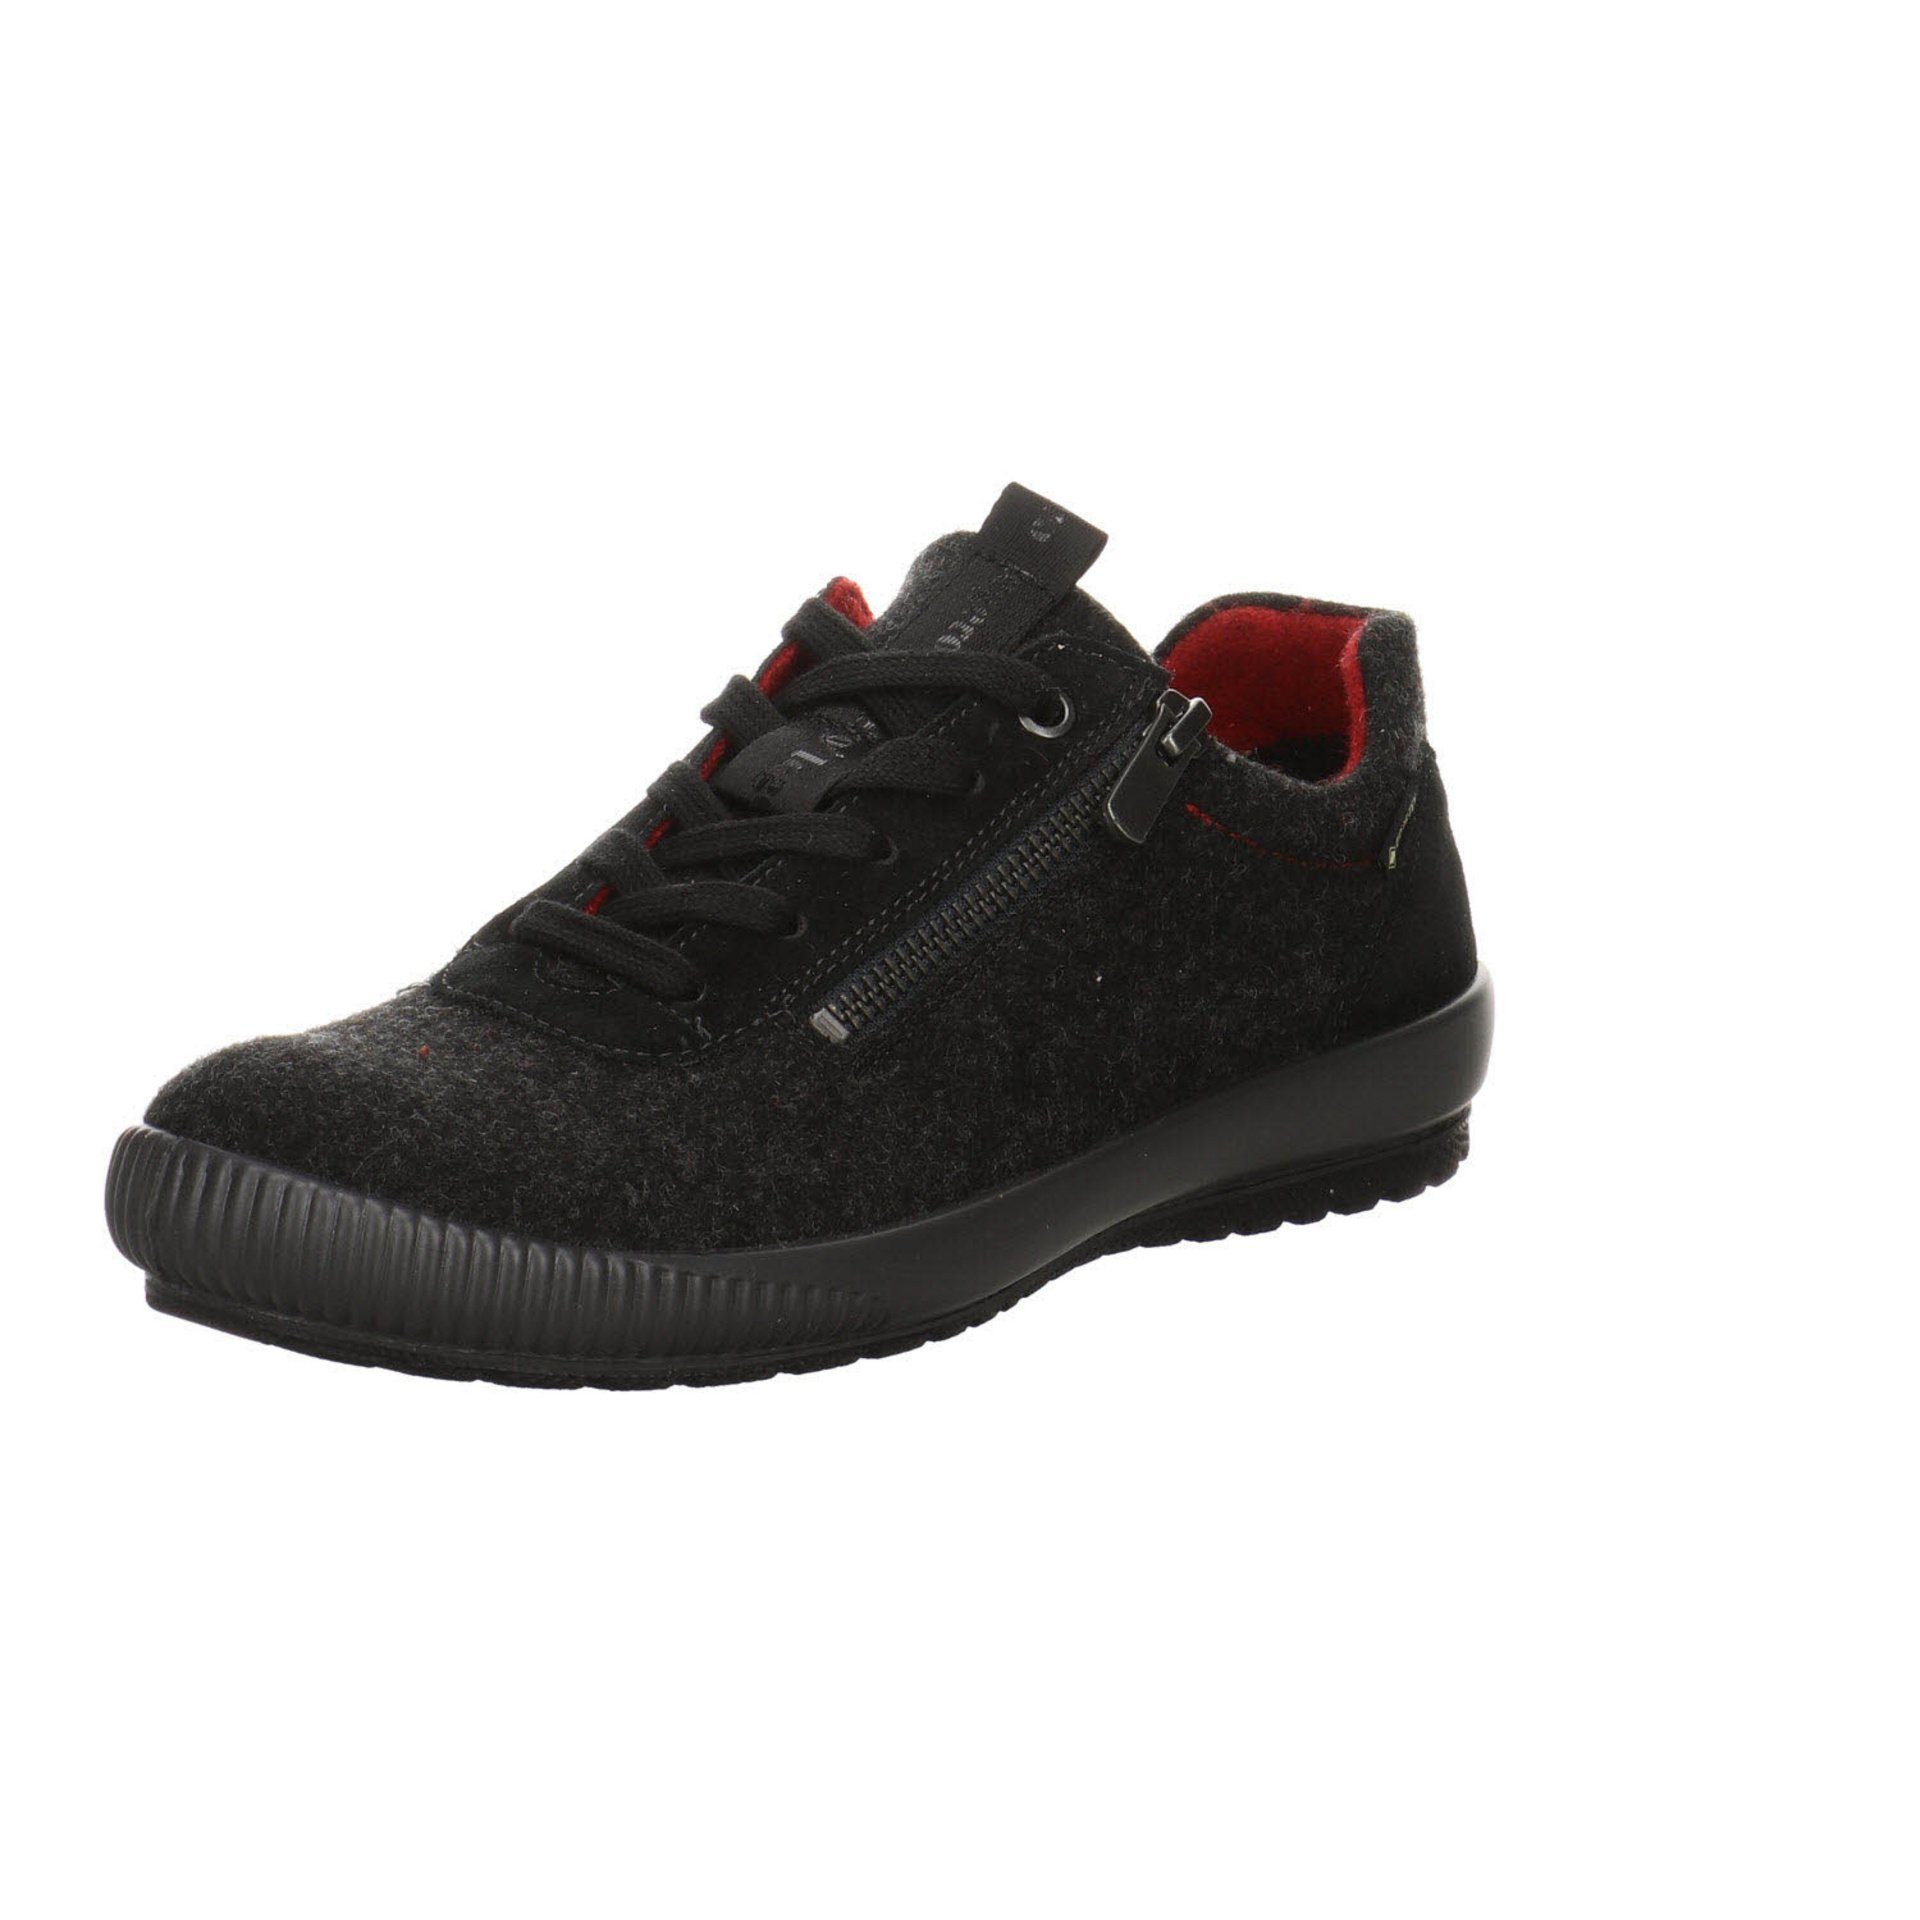 Legero Damen Sneaker Schuhe Tanaro 4.0 Goretex Sneaker Schnürschuh Leder-/Textilkombination schwarz dunkel